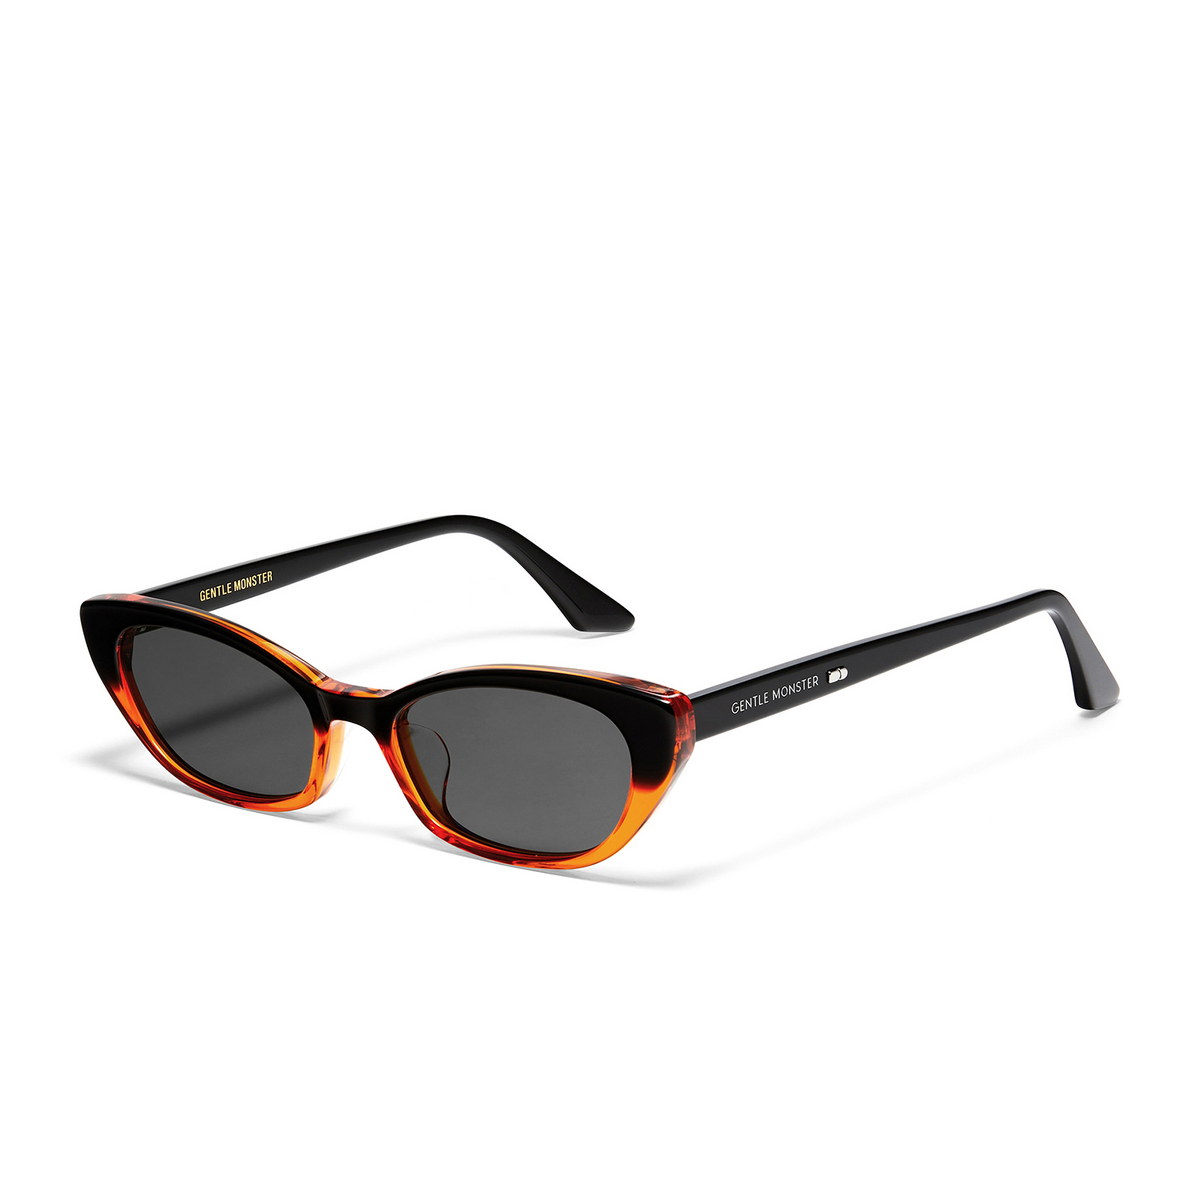 Gentle Monster PESH Sunglasses BOG1 Orange Gradient Black - three-quarters view